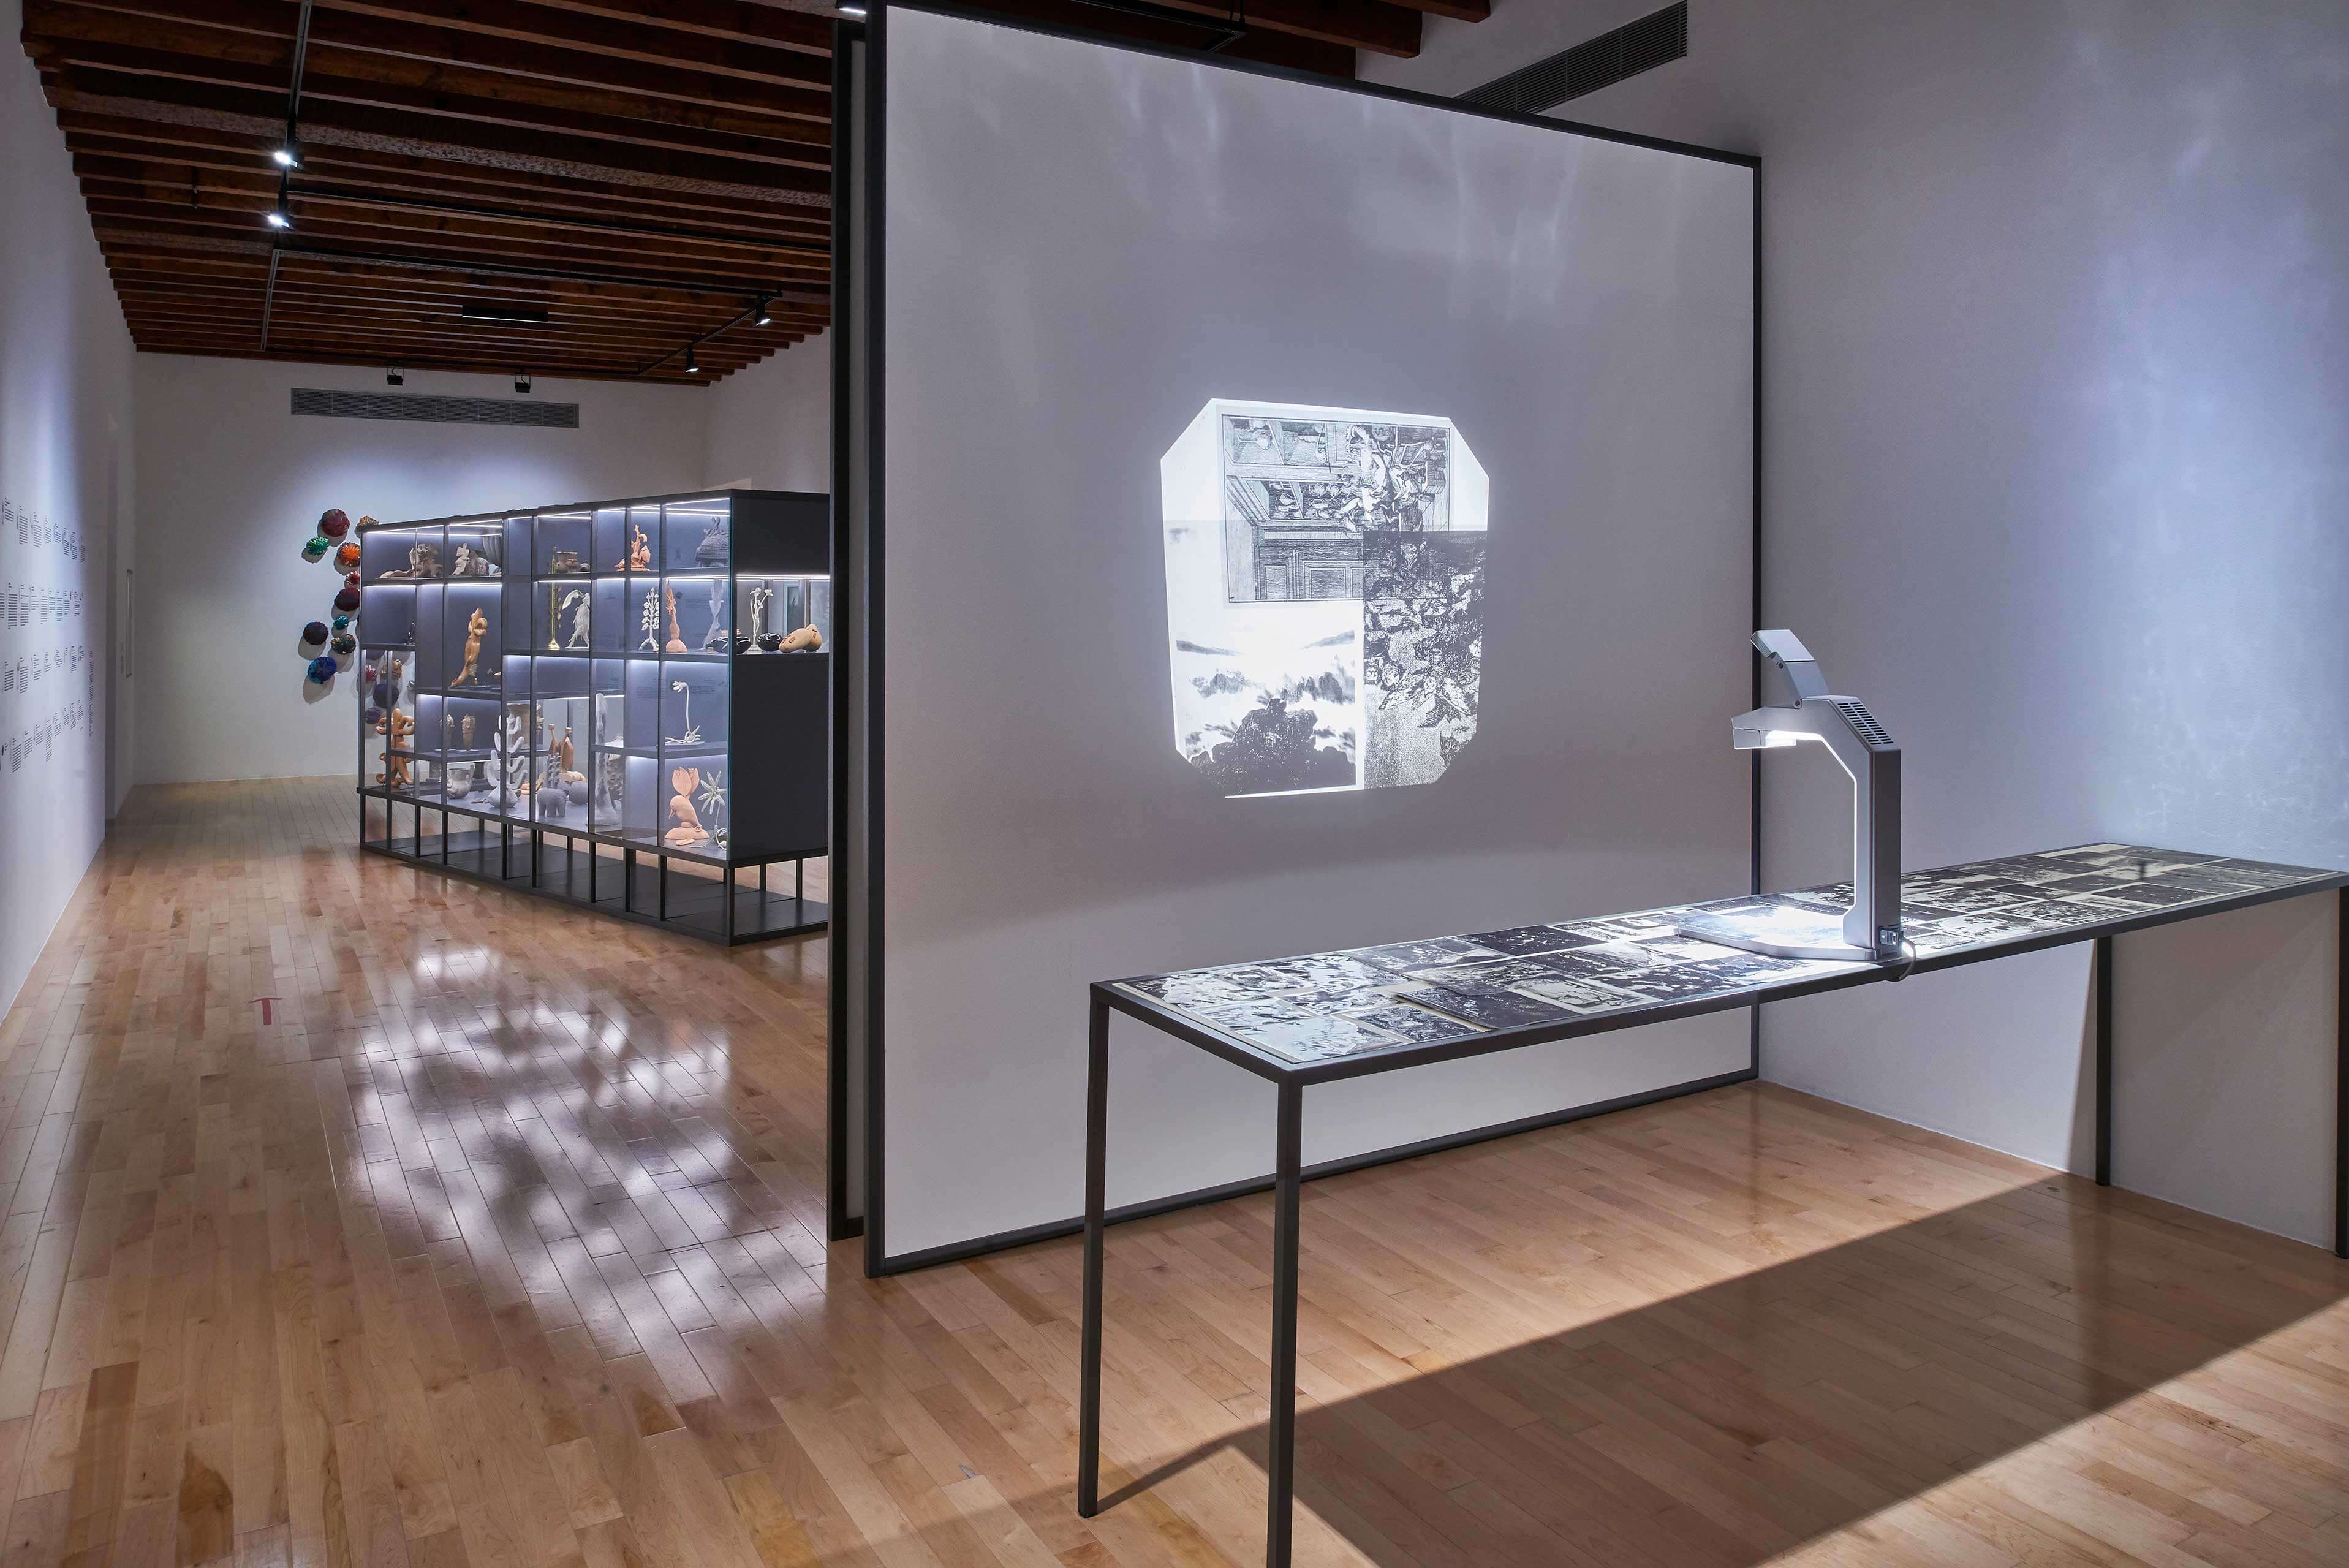 Desaparecer, mostrar, fragmentar, oscurecer | El tiempo en las cosas. Salas de Arte Contemporáneo | Museo Amparo, Puebla